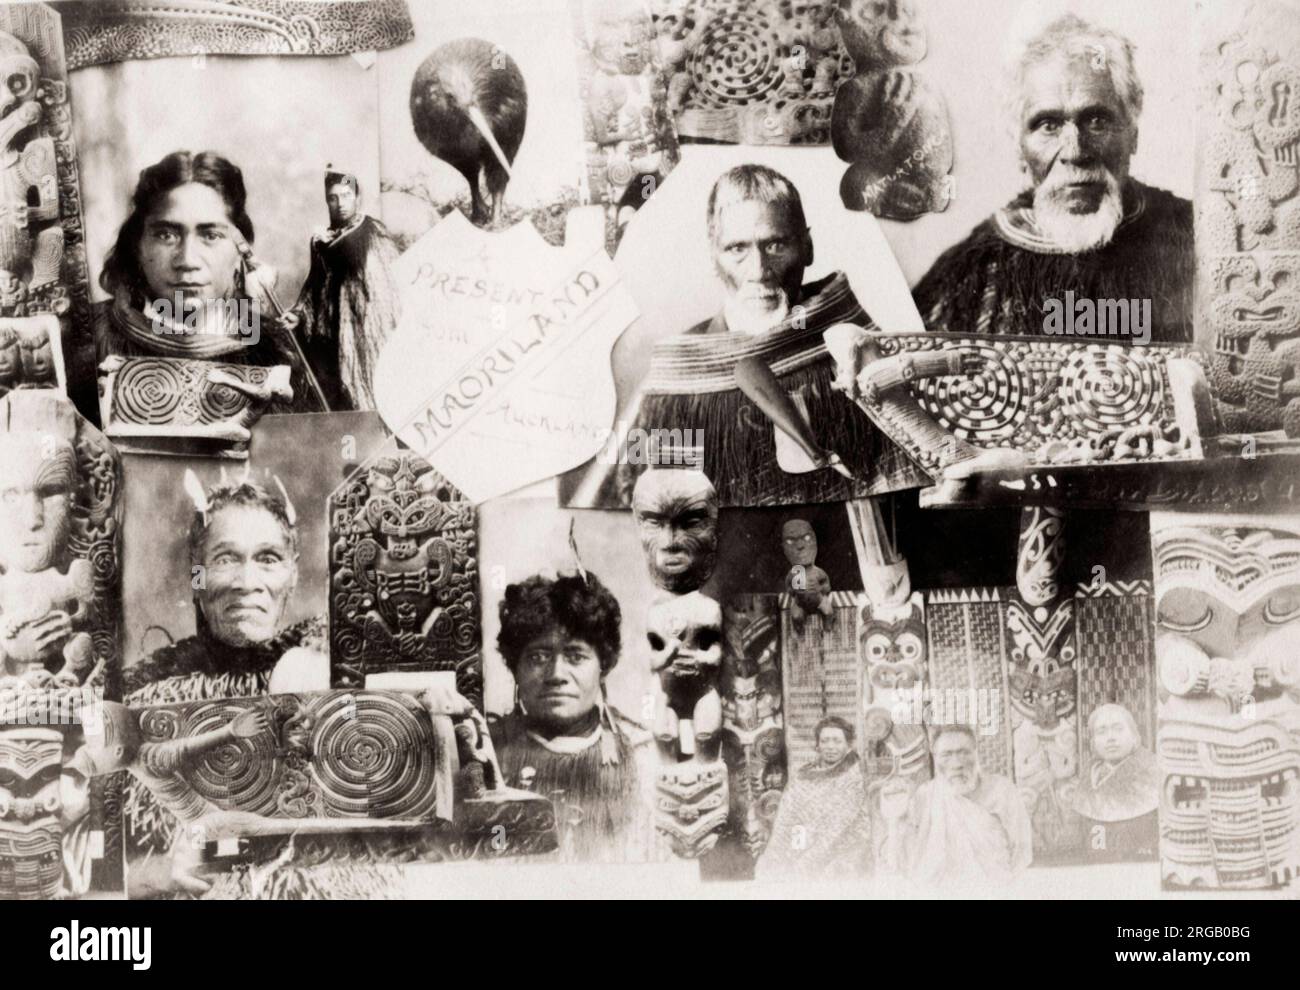 Photographie du XIXe siècle : images composites des Maoris, tirées d'un album souvenir touristique. Banque D'Images